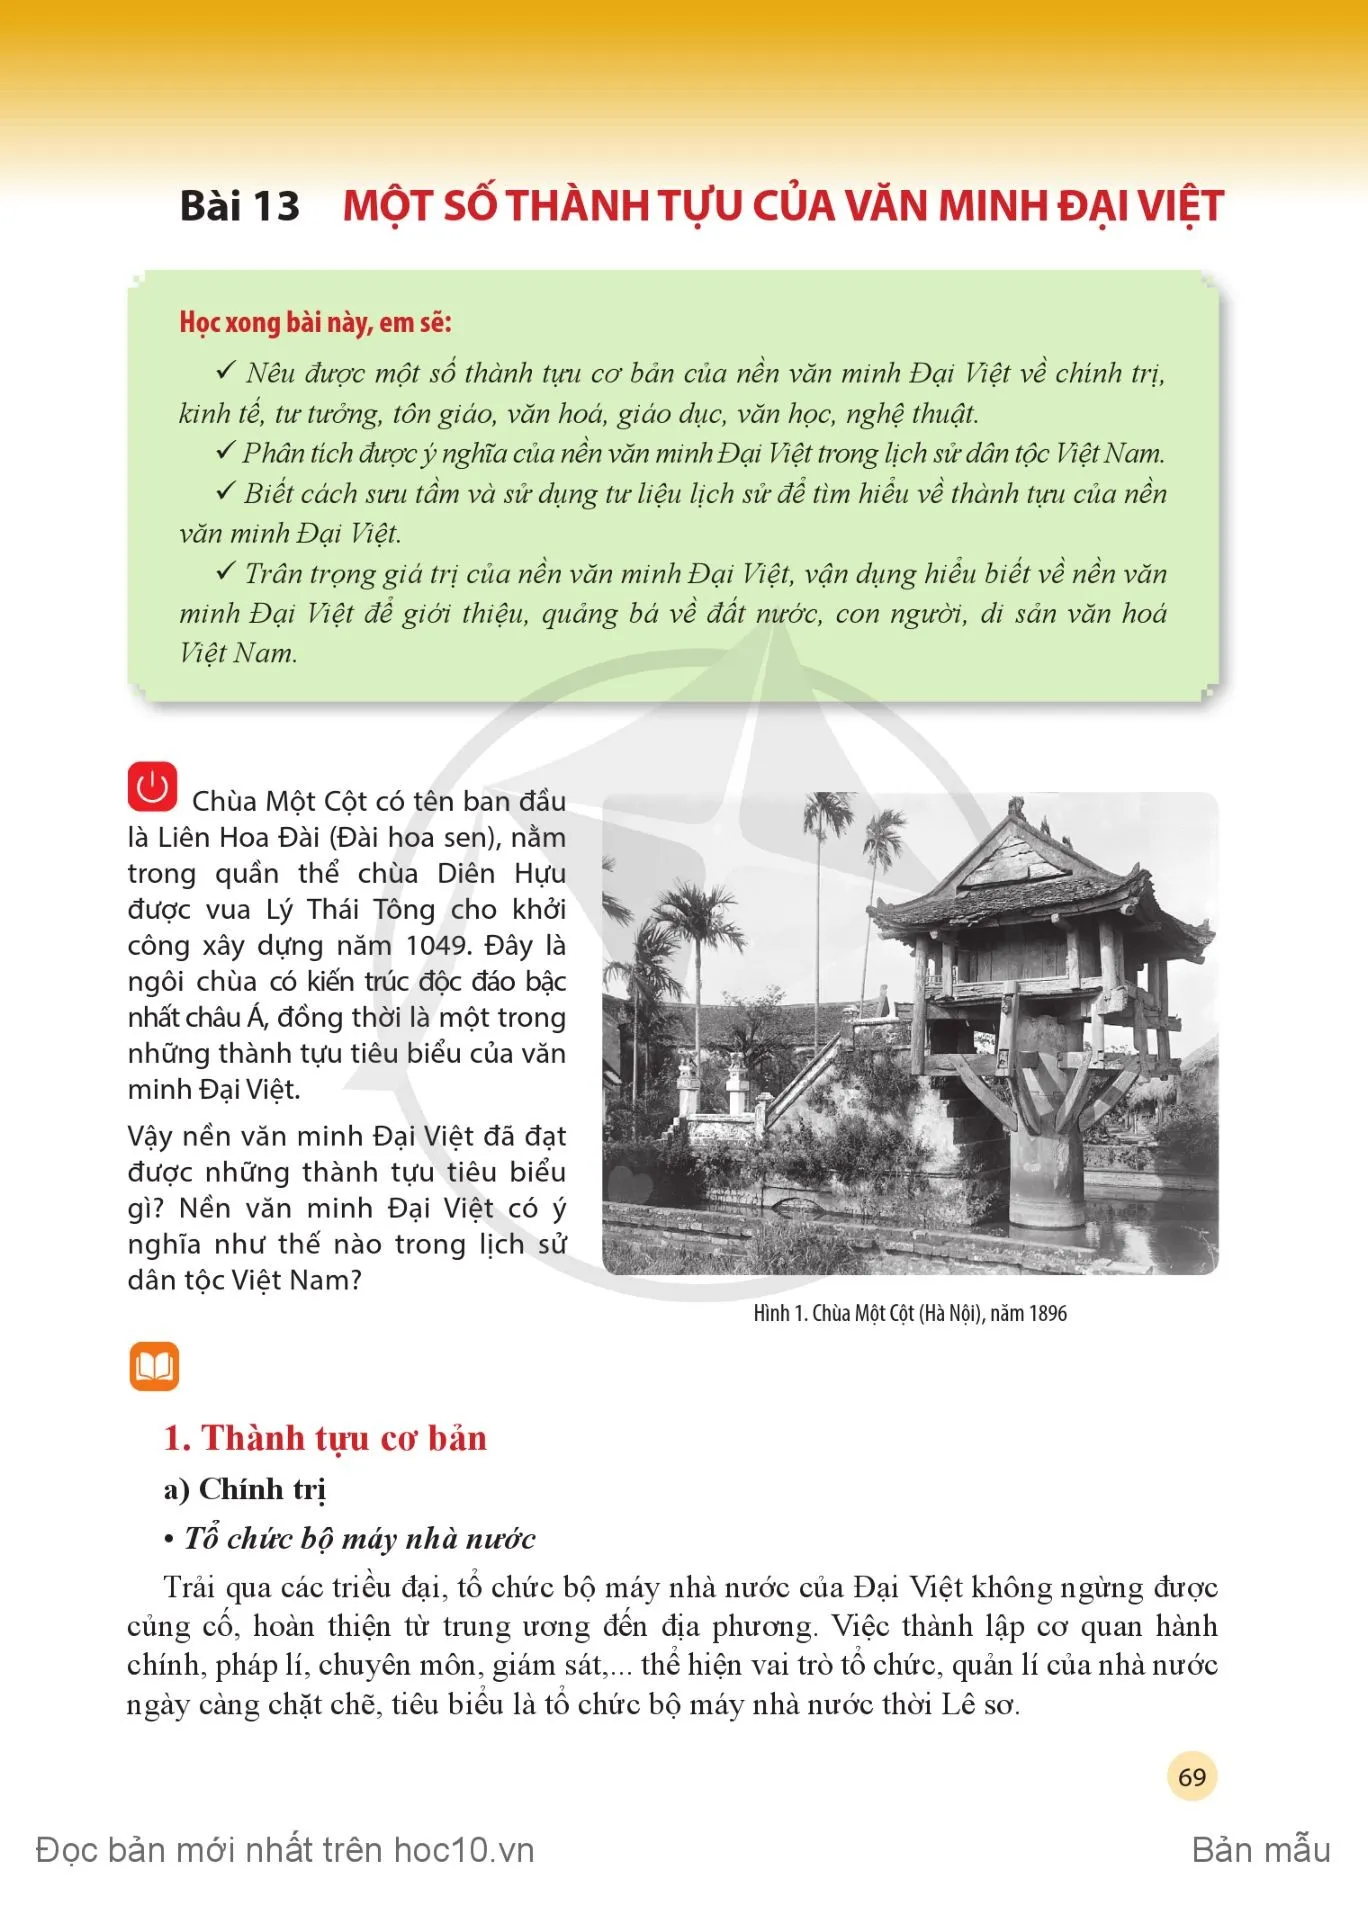 Bài 12: Cơ sở hình thành và quá trình phát triển của văn minh Đại Việt